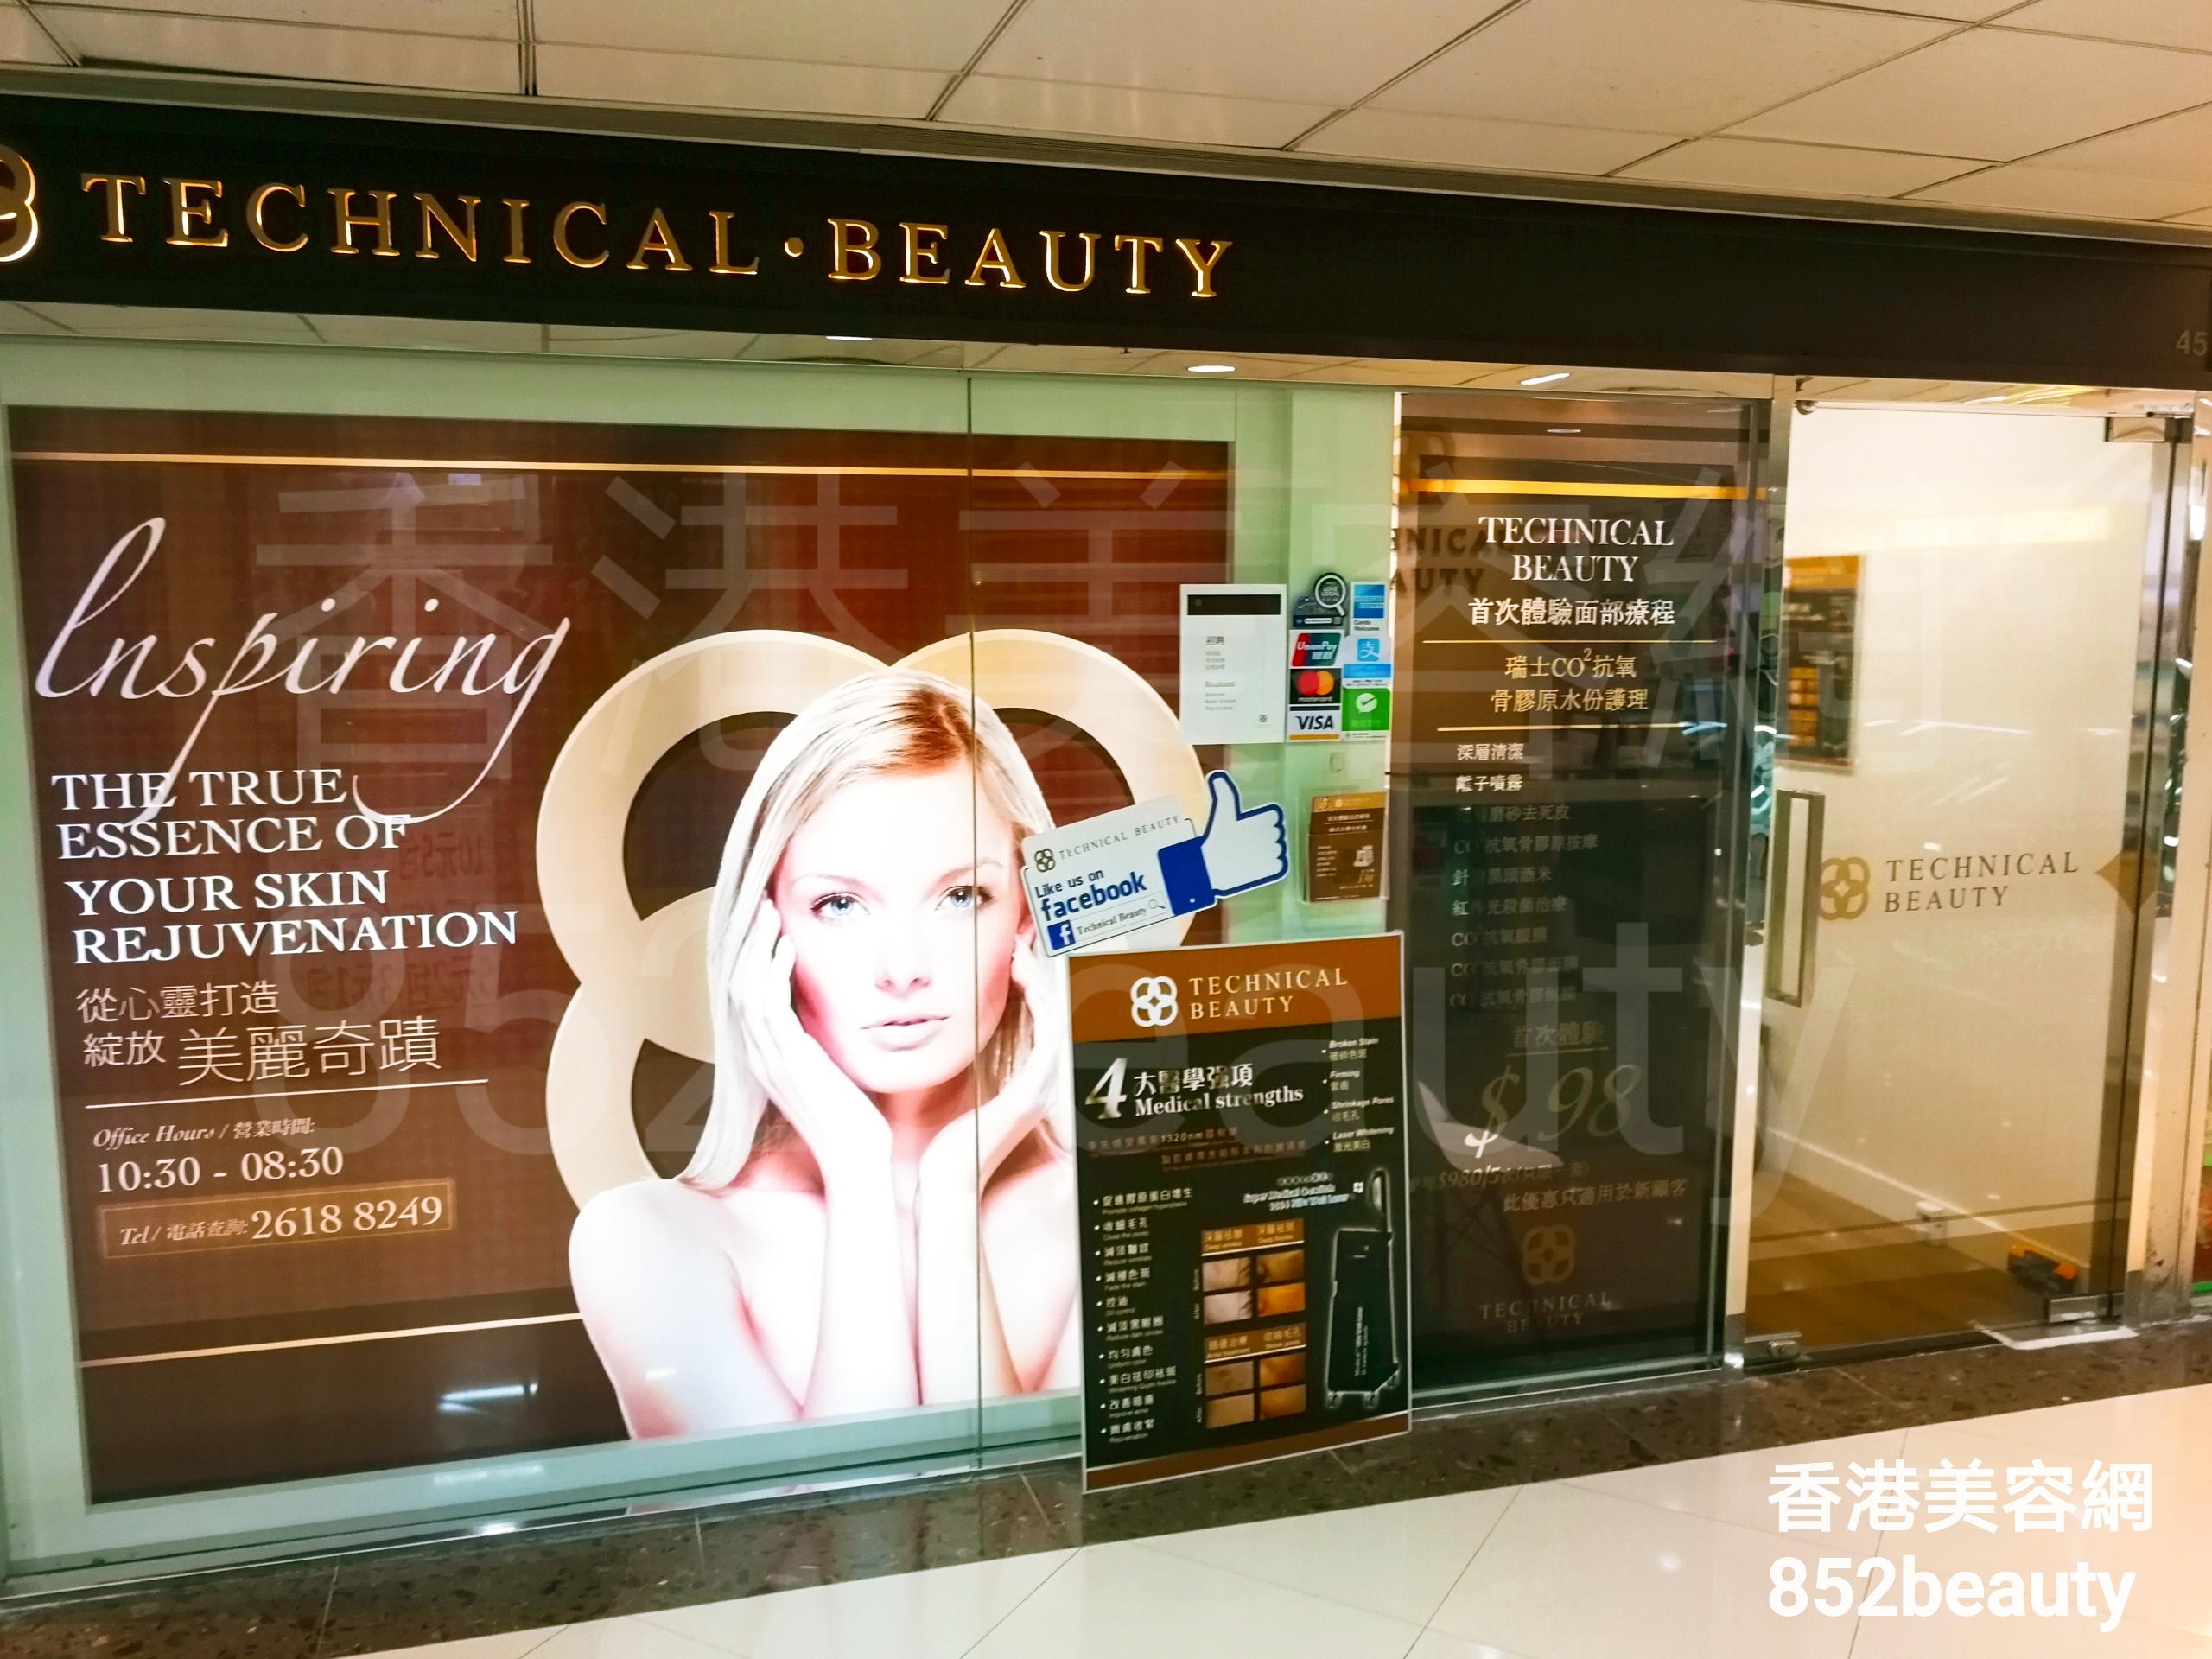 香港美容網 Hong Kong Beauty Salon 美容院 / 美容師: TECHNICAL BEAUTY